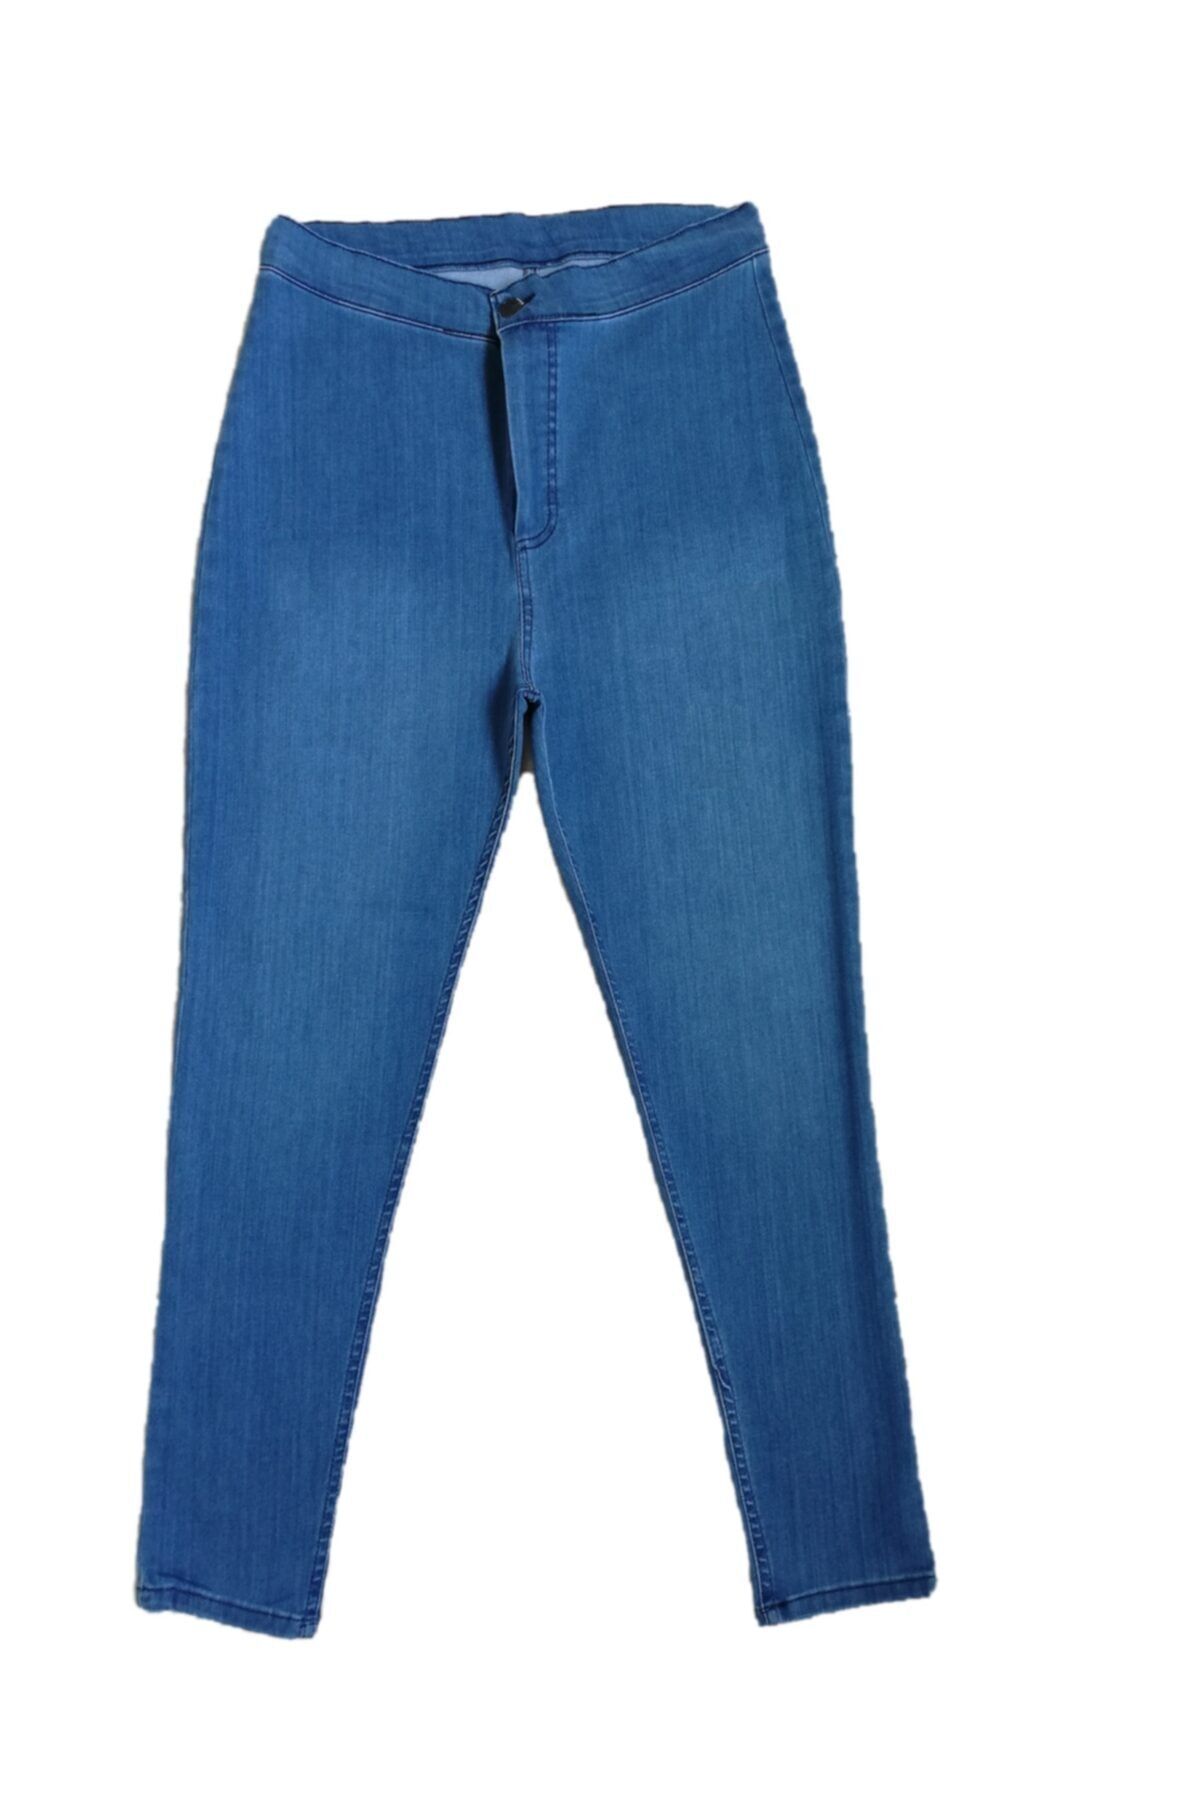 ÇİÇEK BUTİK Kadın Mavi Kot Pantolon